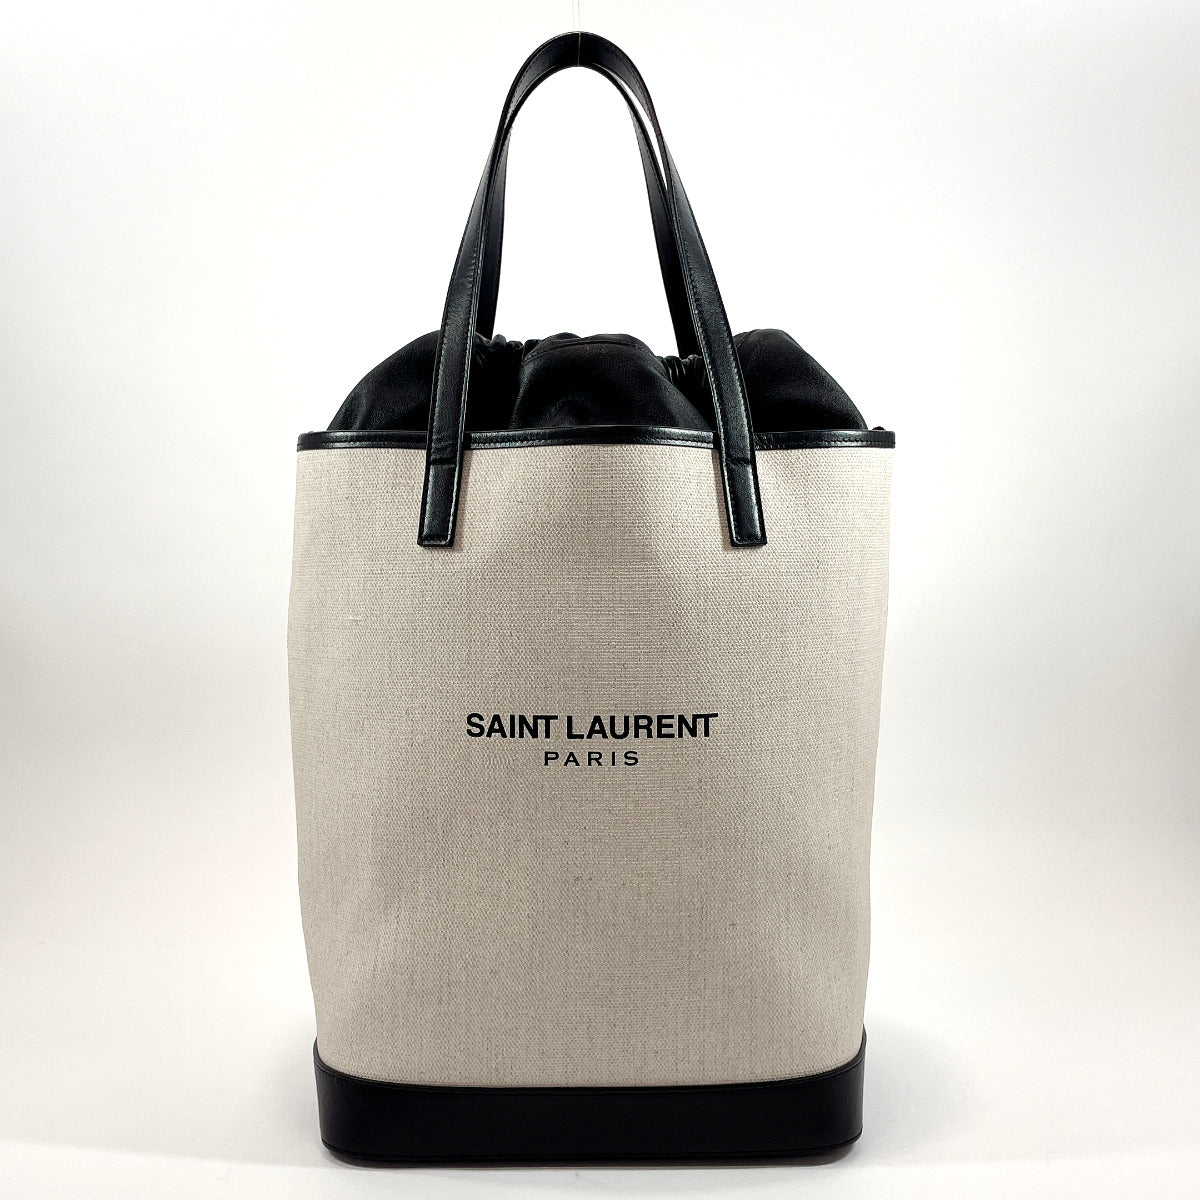 Saint Laurent Canvas Tote Bags